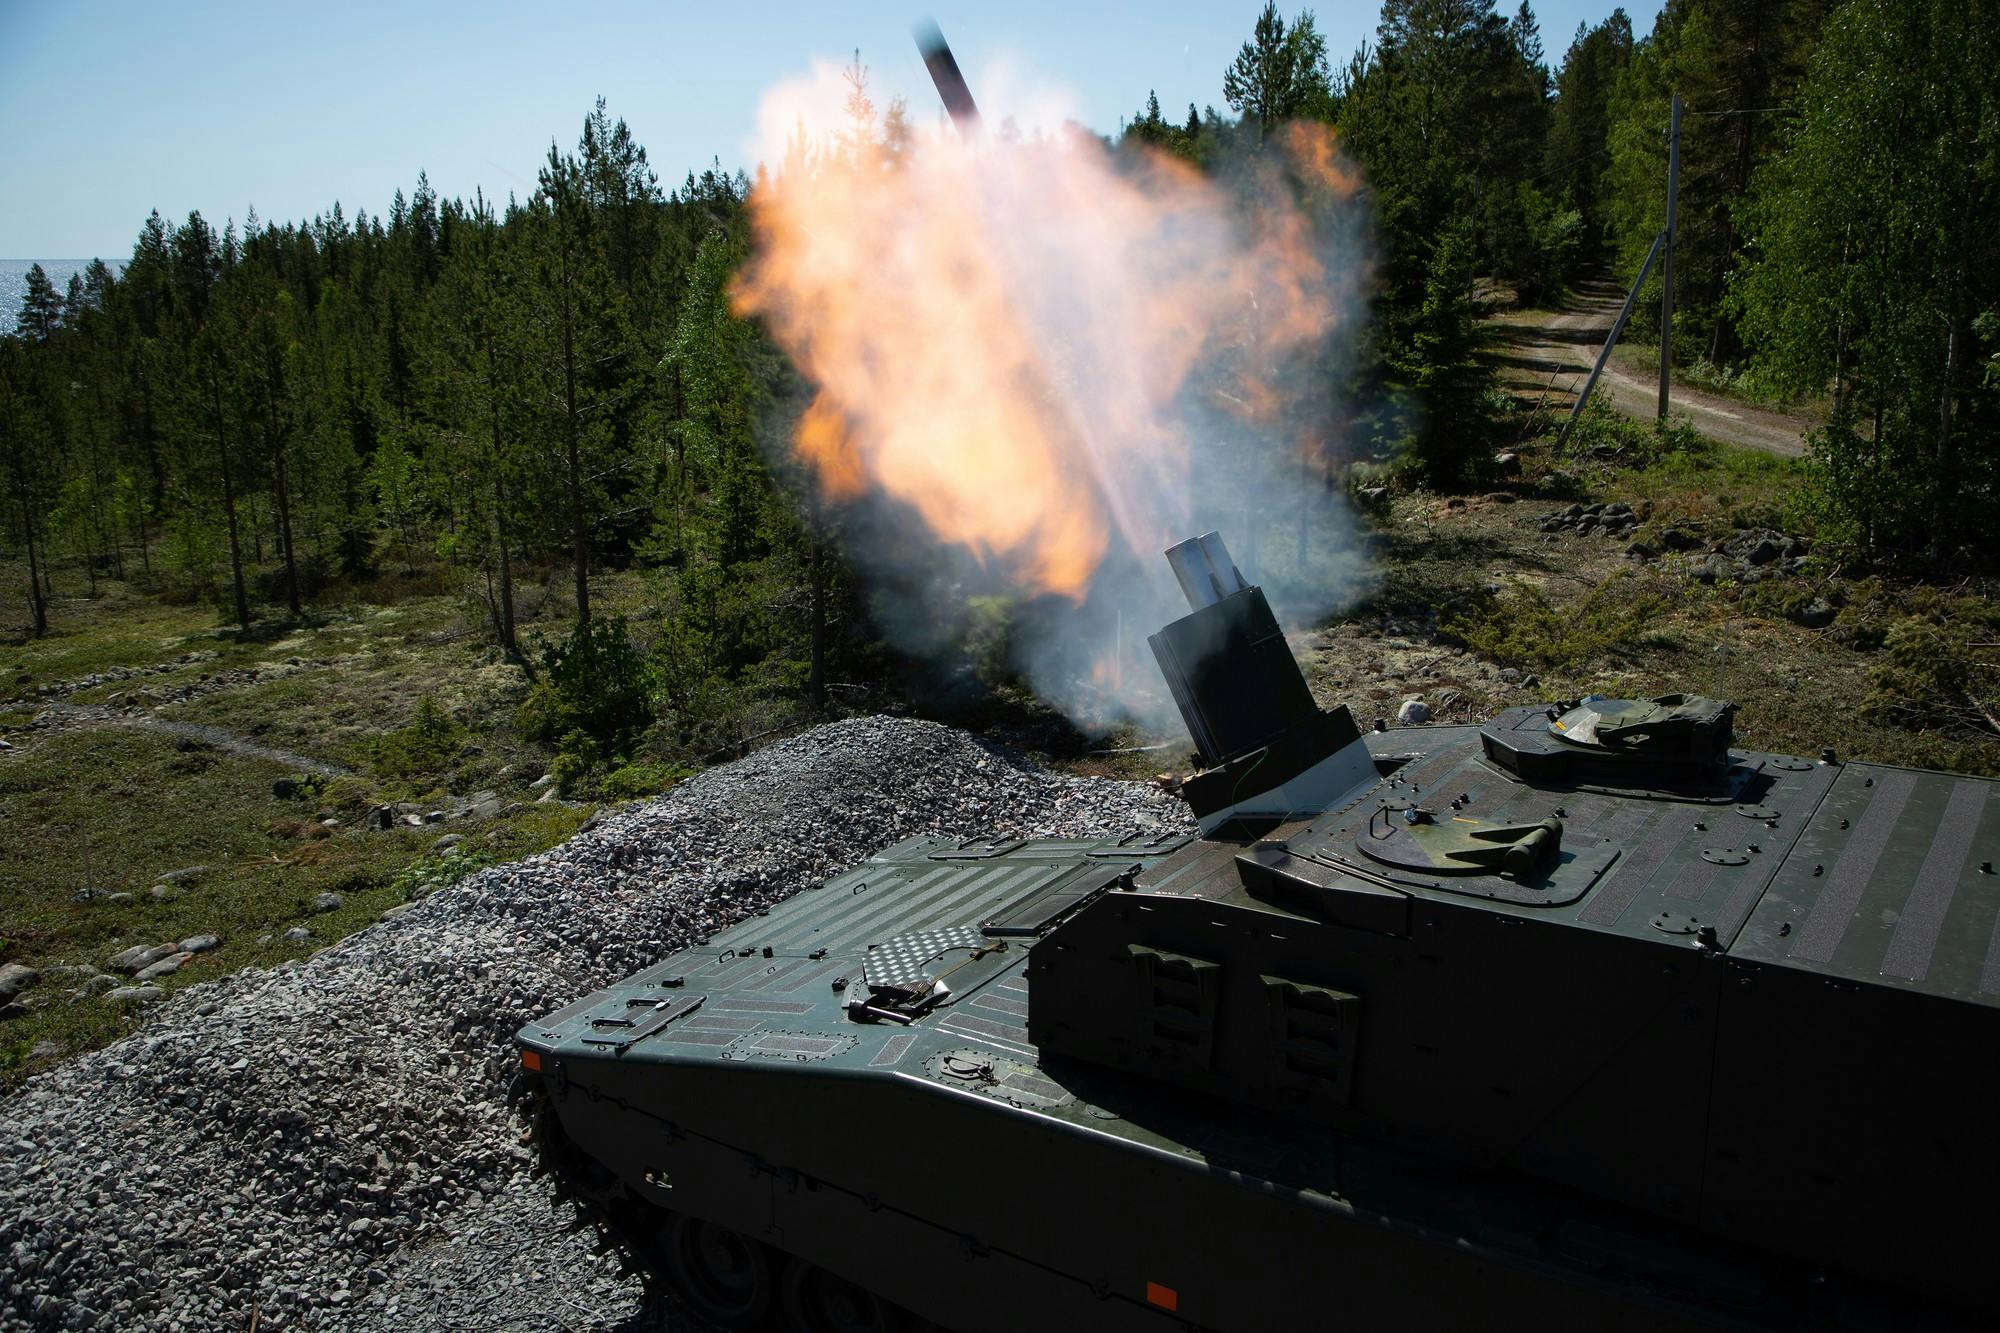 Bae Delivers New Cv90 Mortar Variant Mjölner To Sweden